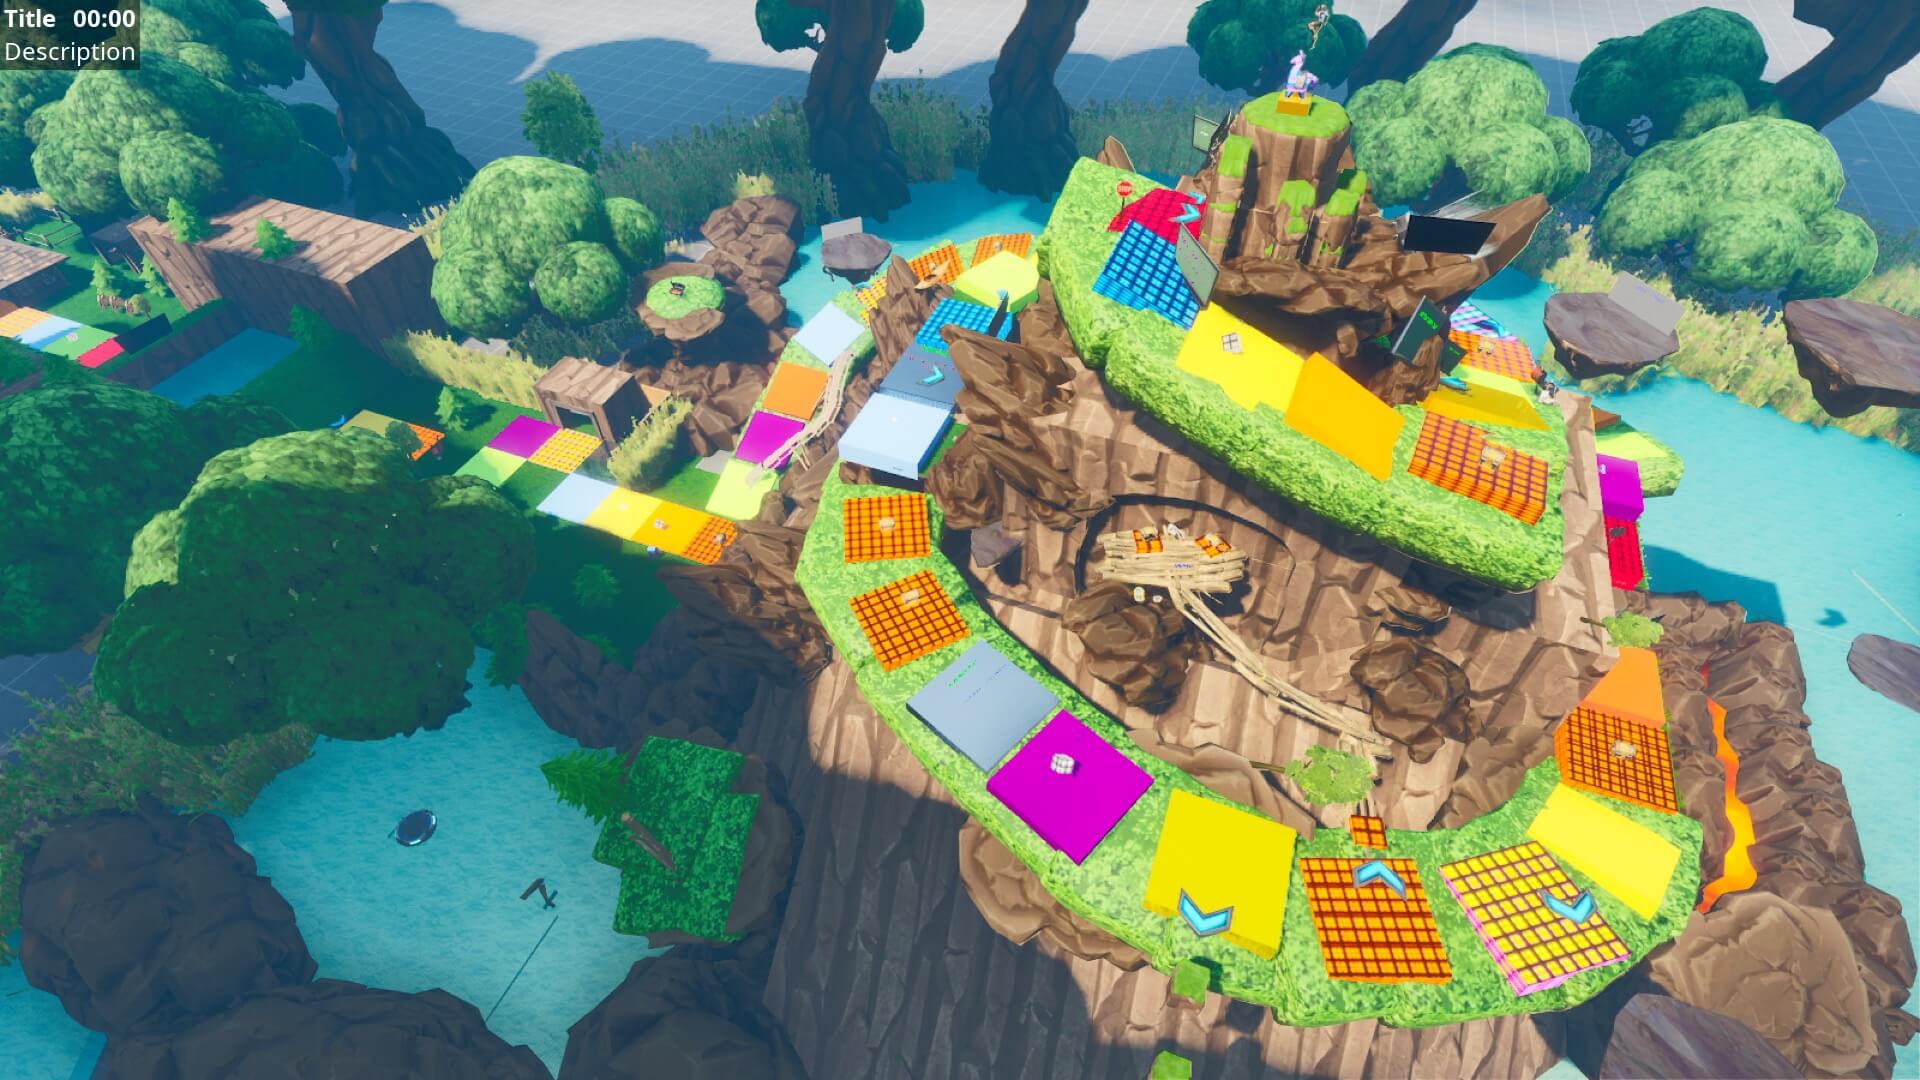 Island Map Codes Fortnite Giant Island Board Game And Battle Fortnite Creative Map Code Dropnite